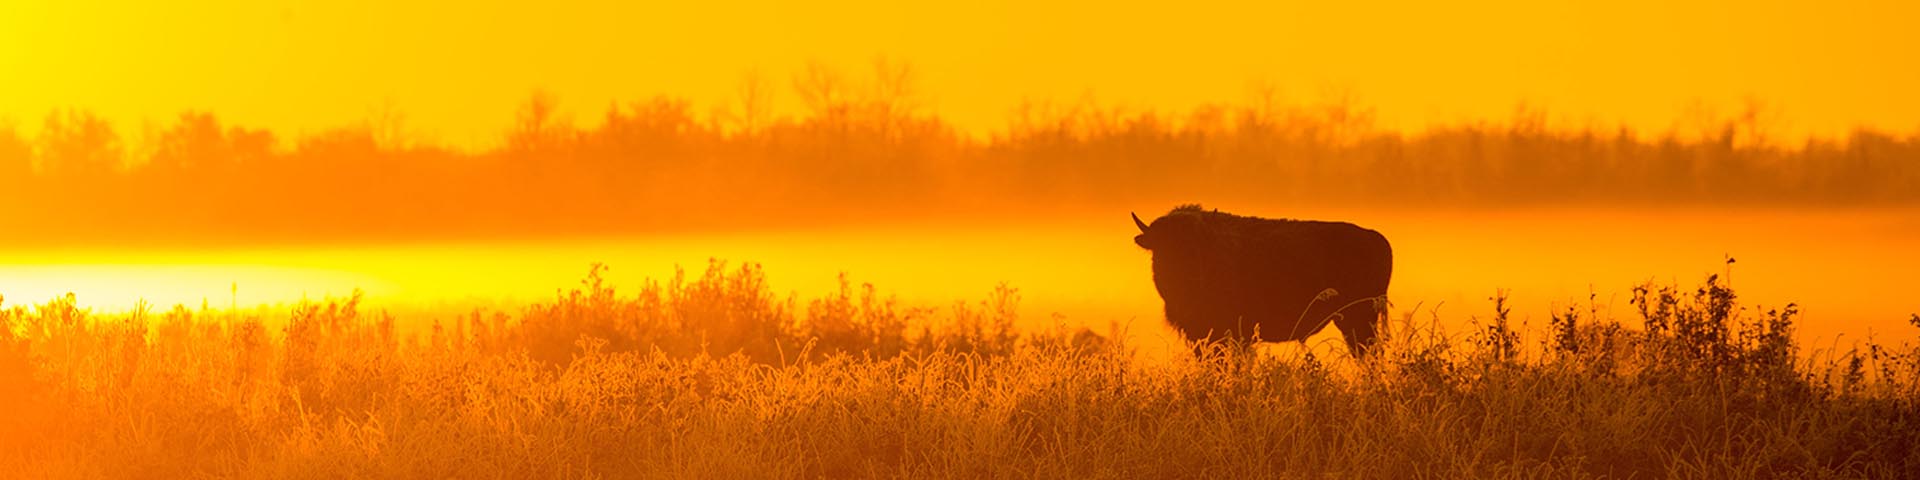 Un bison solitaire debout dans les prairies. Le soleil se couche, ce qui confère à la scène une intense lueur dorée.